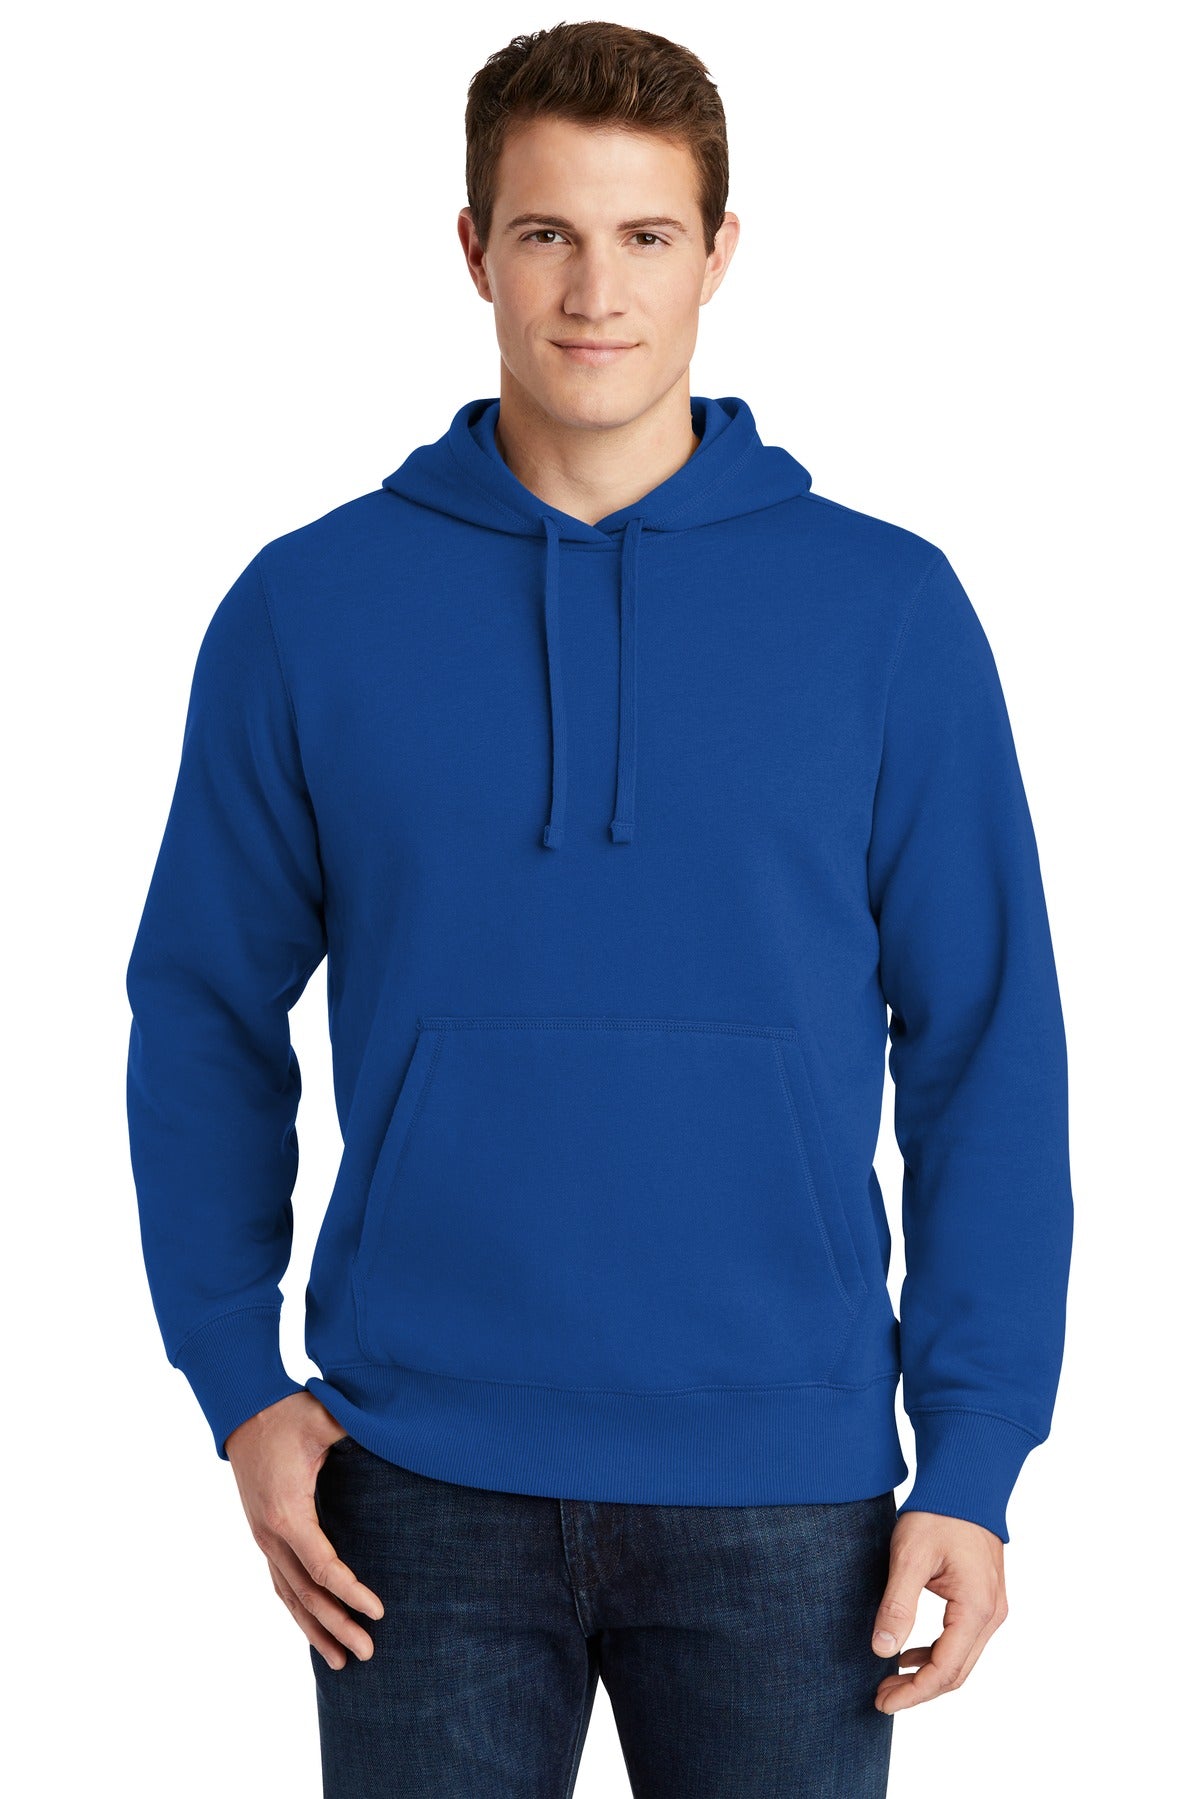 Sweatshirts/Fleece True Royal Sport-Tek